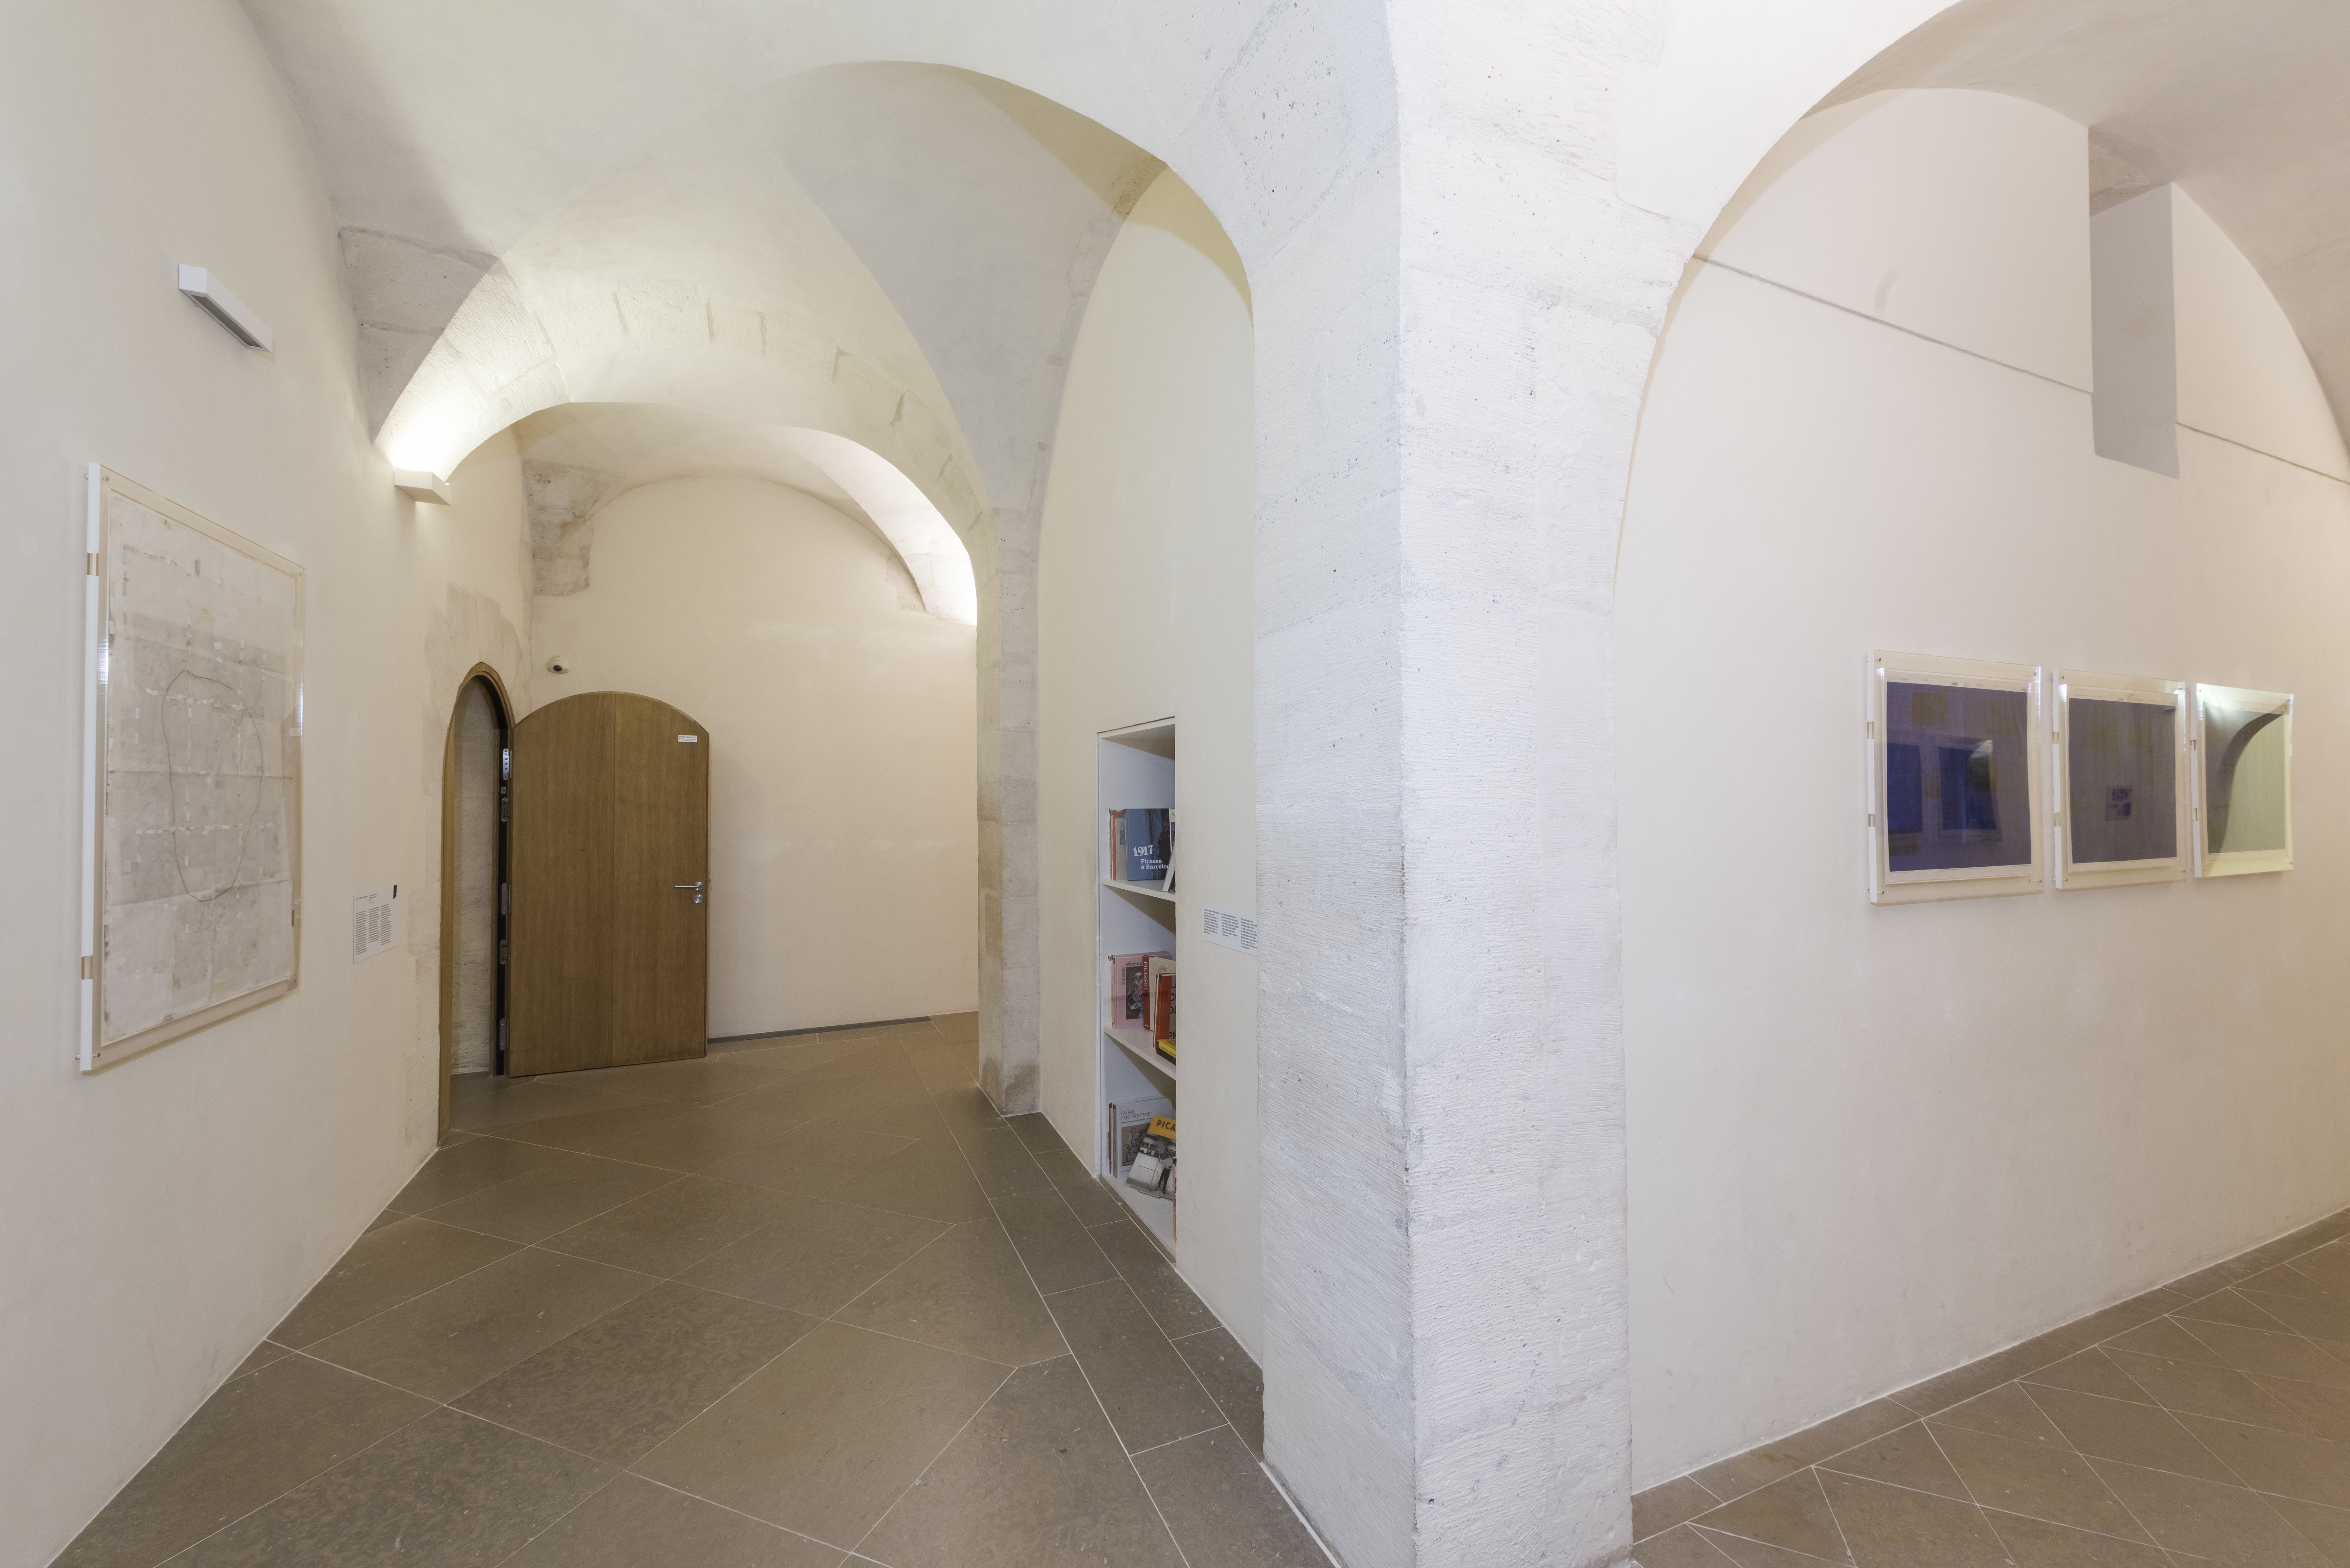 Salles de l'exposition Picasso obstinément méditerranéen